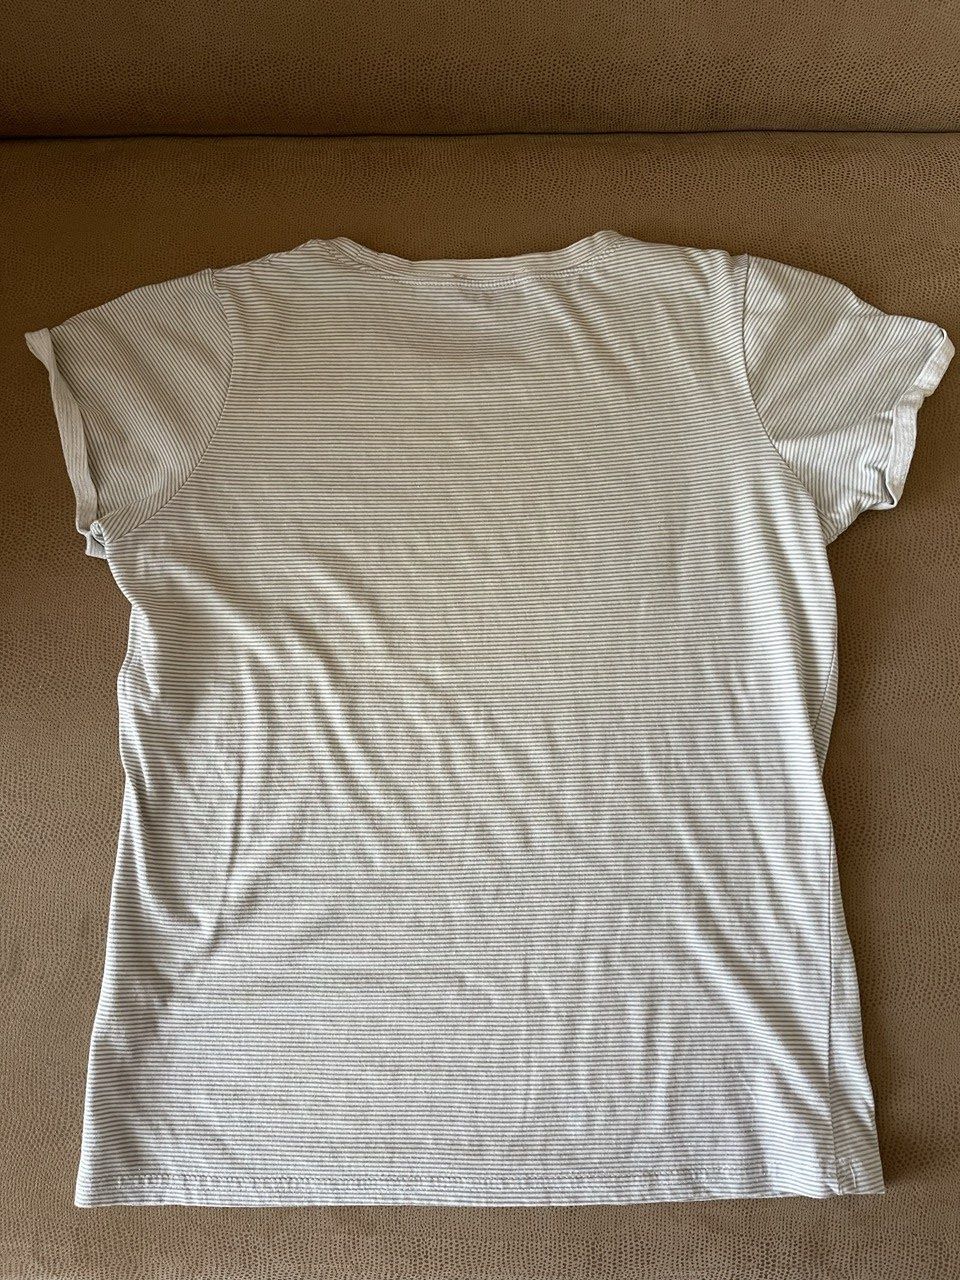 Женская летняя футболка, размер s